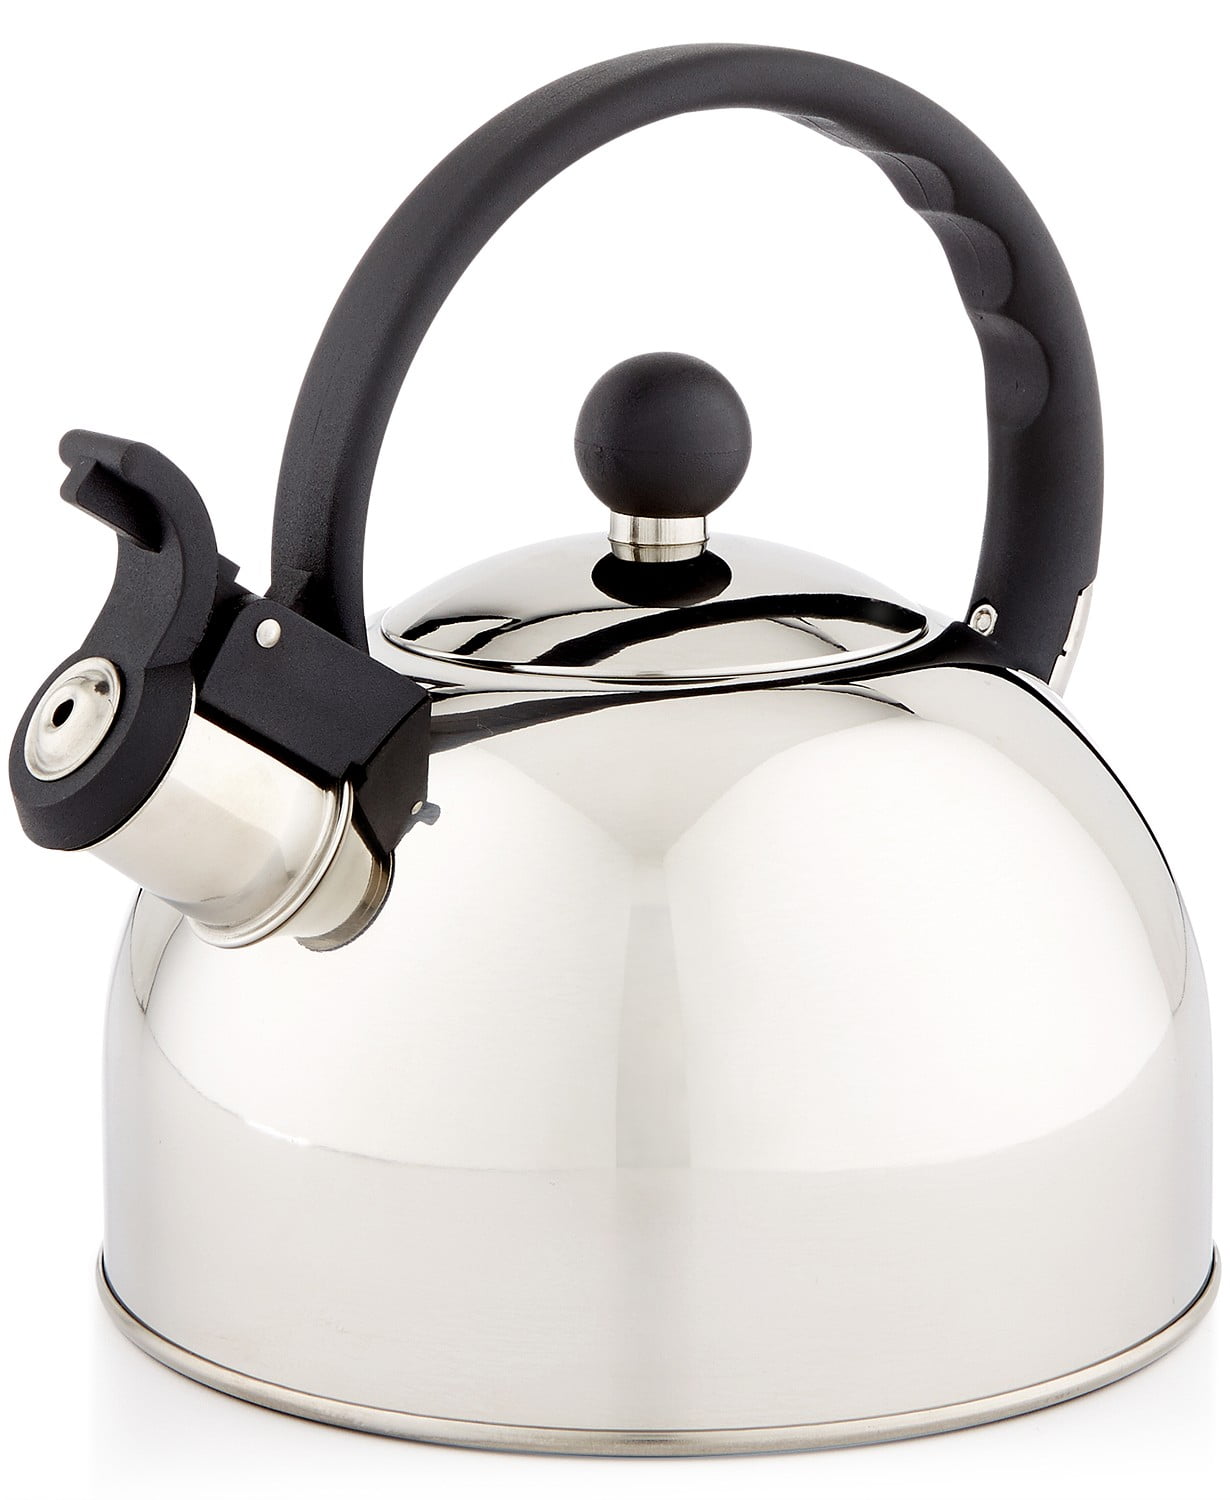 essentials kettle price